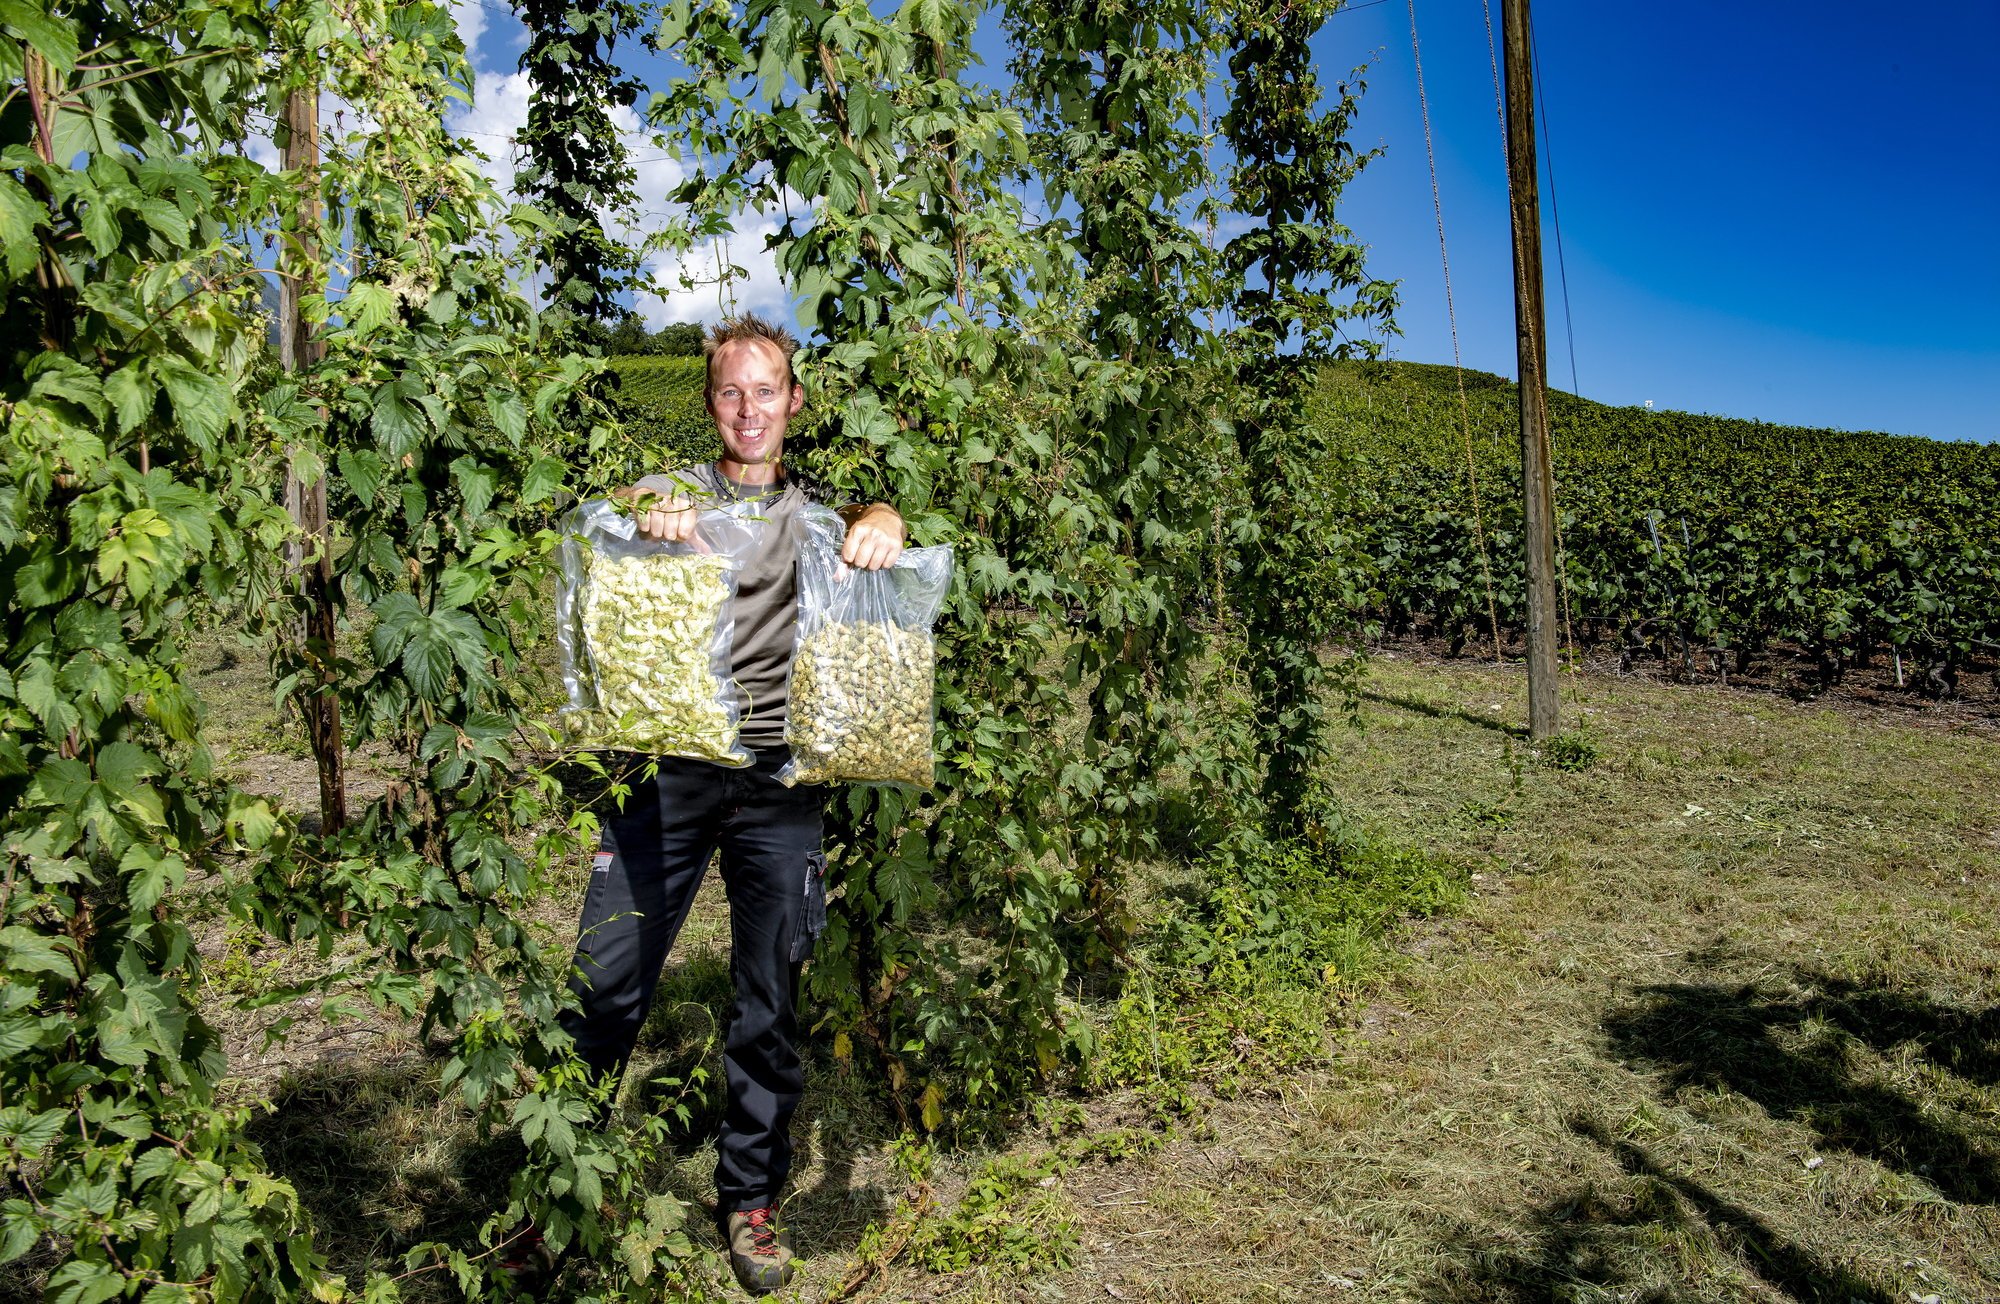 Comme les plantes ne sont pas encore à maturité sur sa parcelle au cœur du vignoble saviésan, Gaël Roten a apporté deux sacs issus de sa première récolte de houblon.